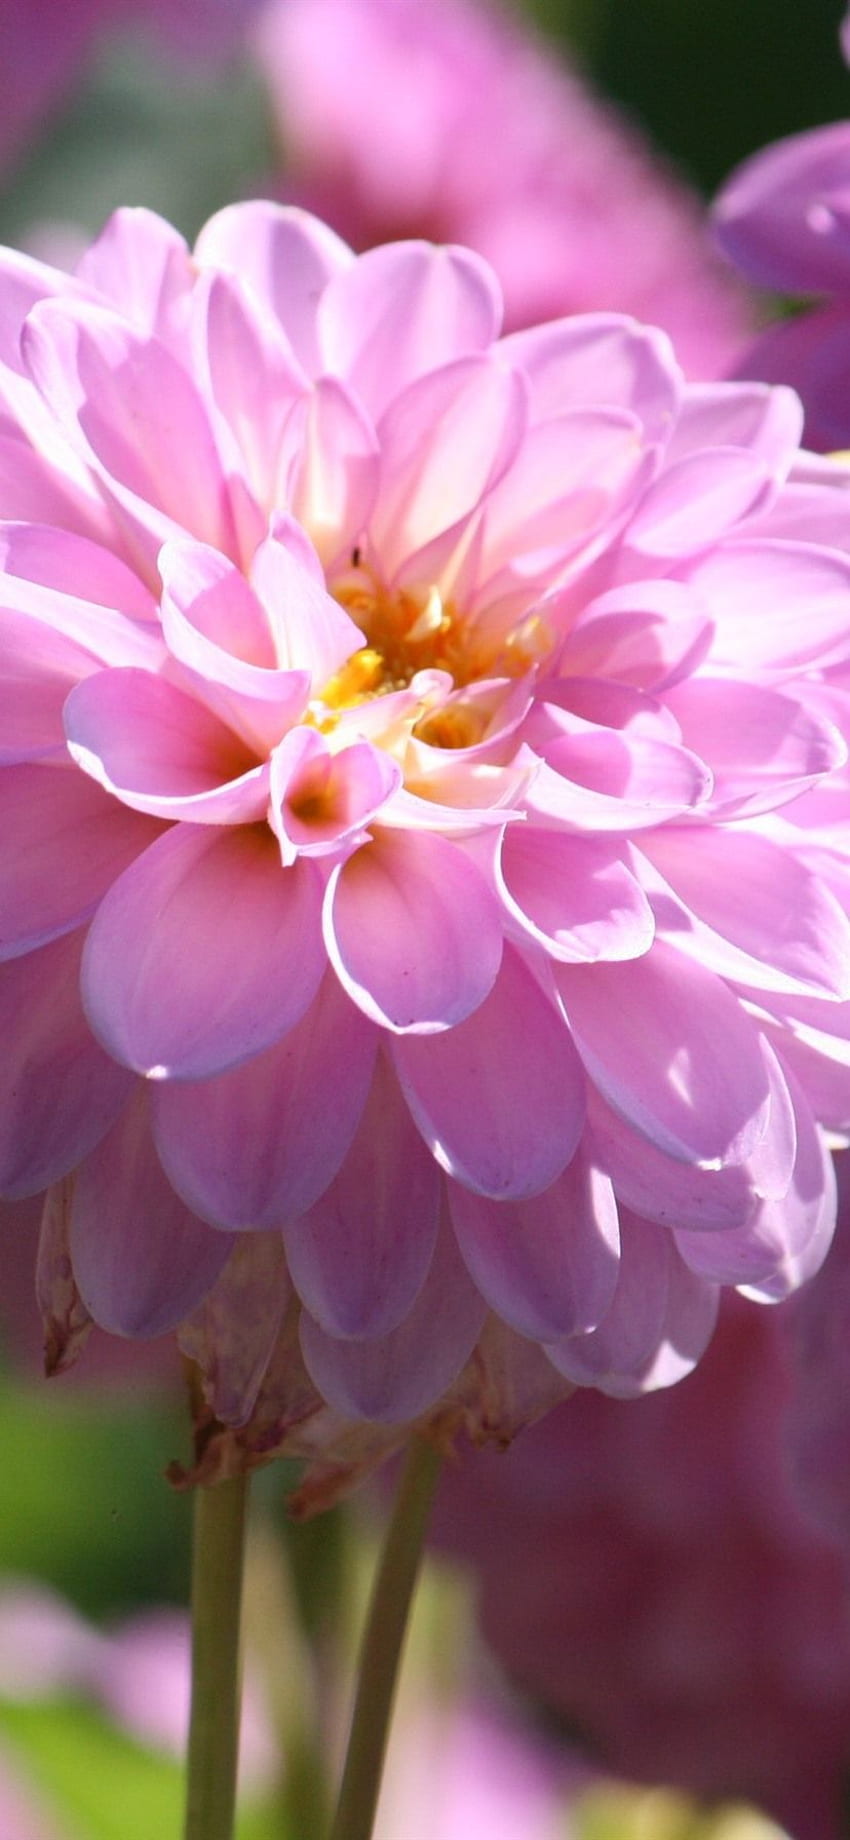 Pink Dahlia Bloom, primavera, brillante IPhone 11 XR, , floral brillante fondo de pantalla del teléfono